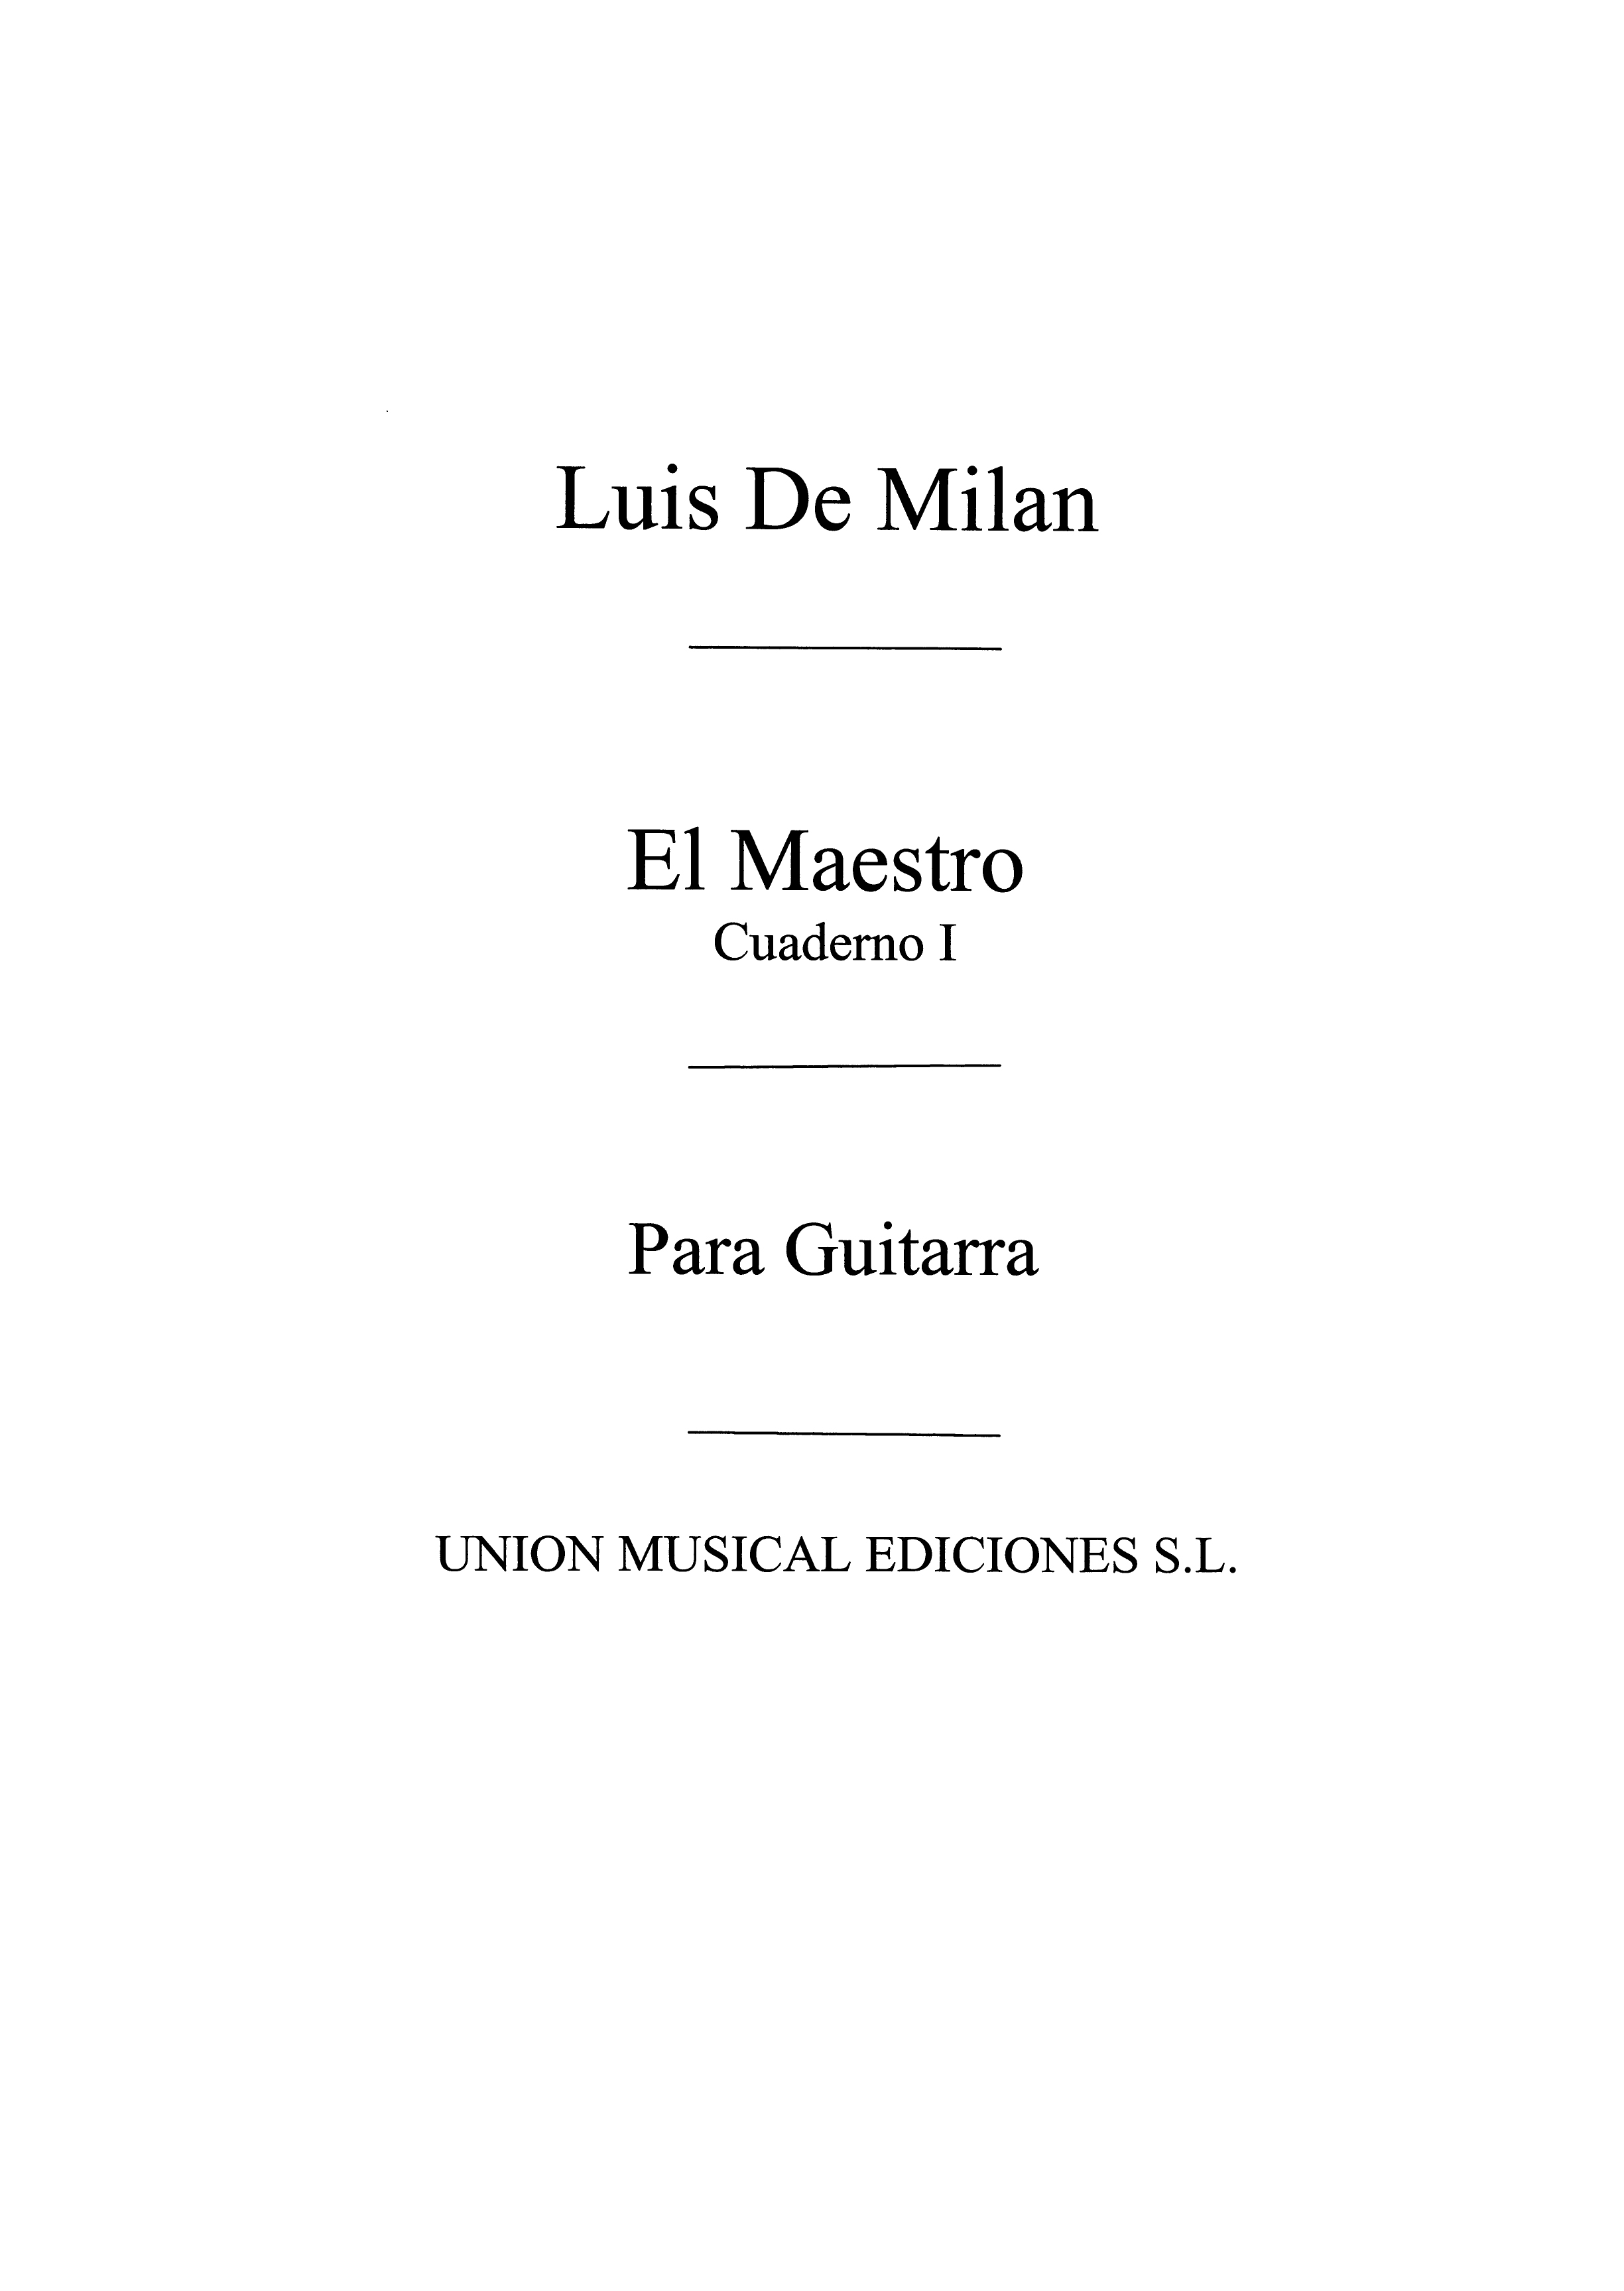 Luys Milan: El Maestro Vol.1: Guitar: Instrumental Work